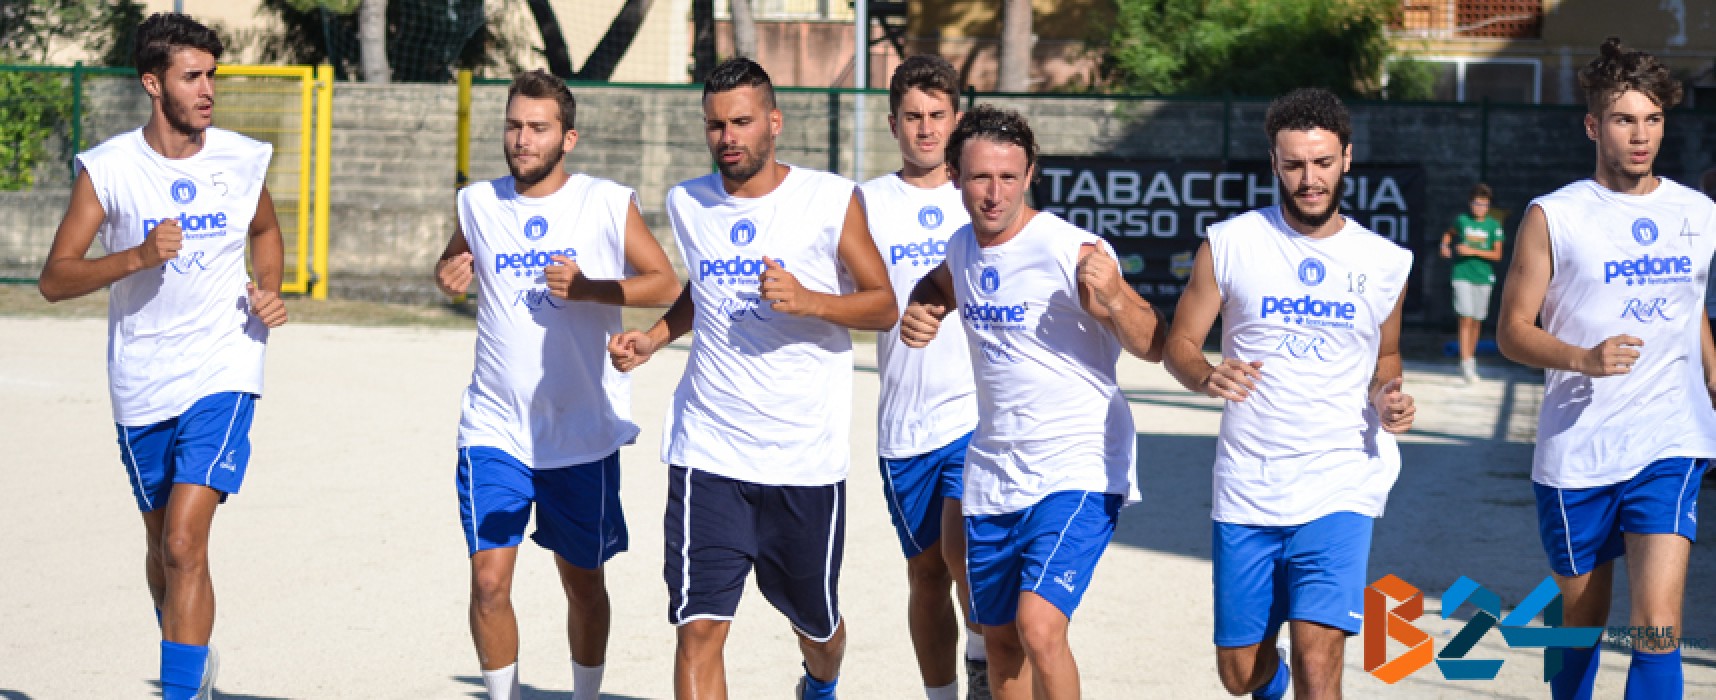 Raduno Unione Calcio, il Ds Storelli: “Puntiamo a vincere il campionato” / FOTO